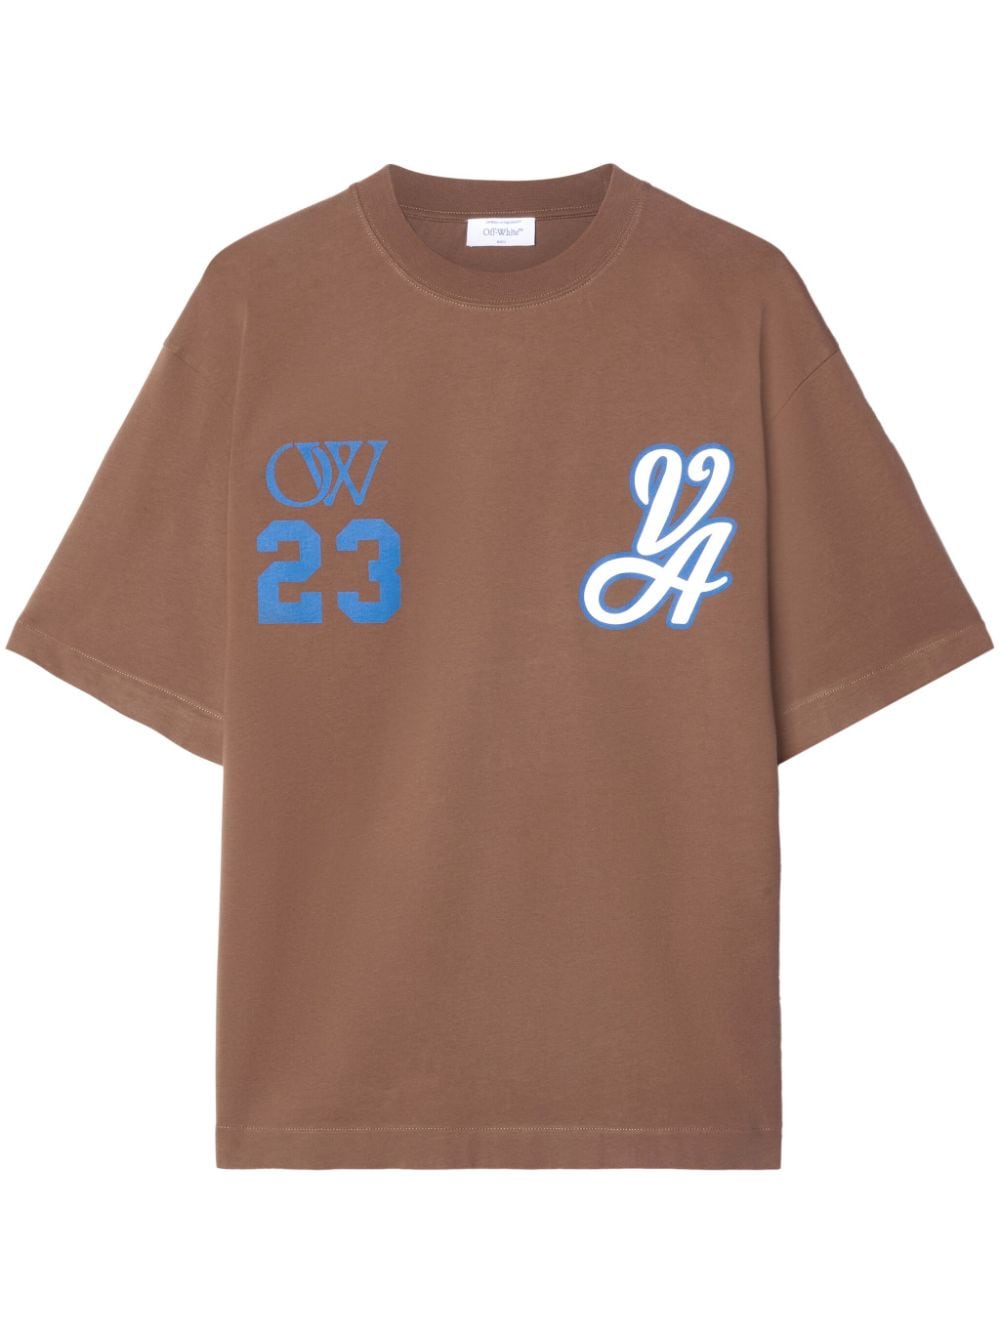 23 Varsity Skate cotton T-shirt